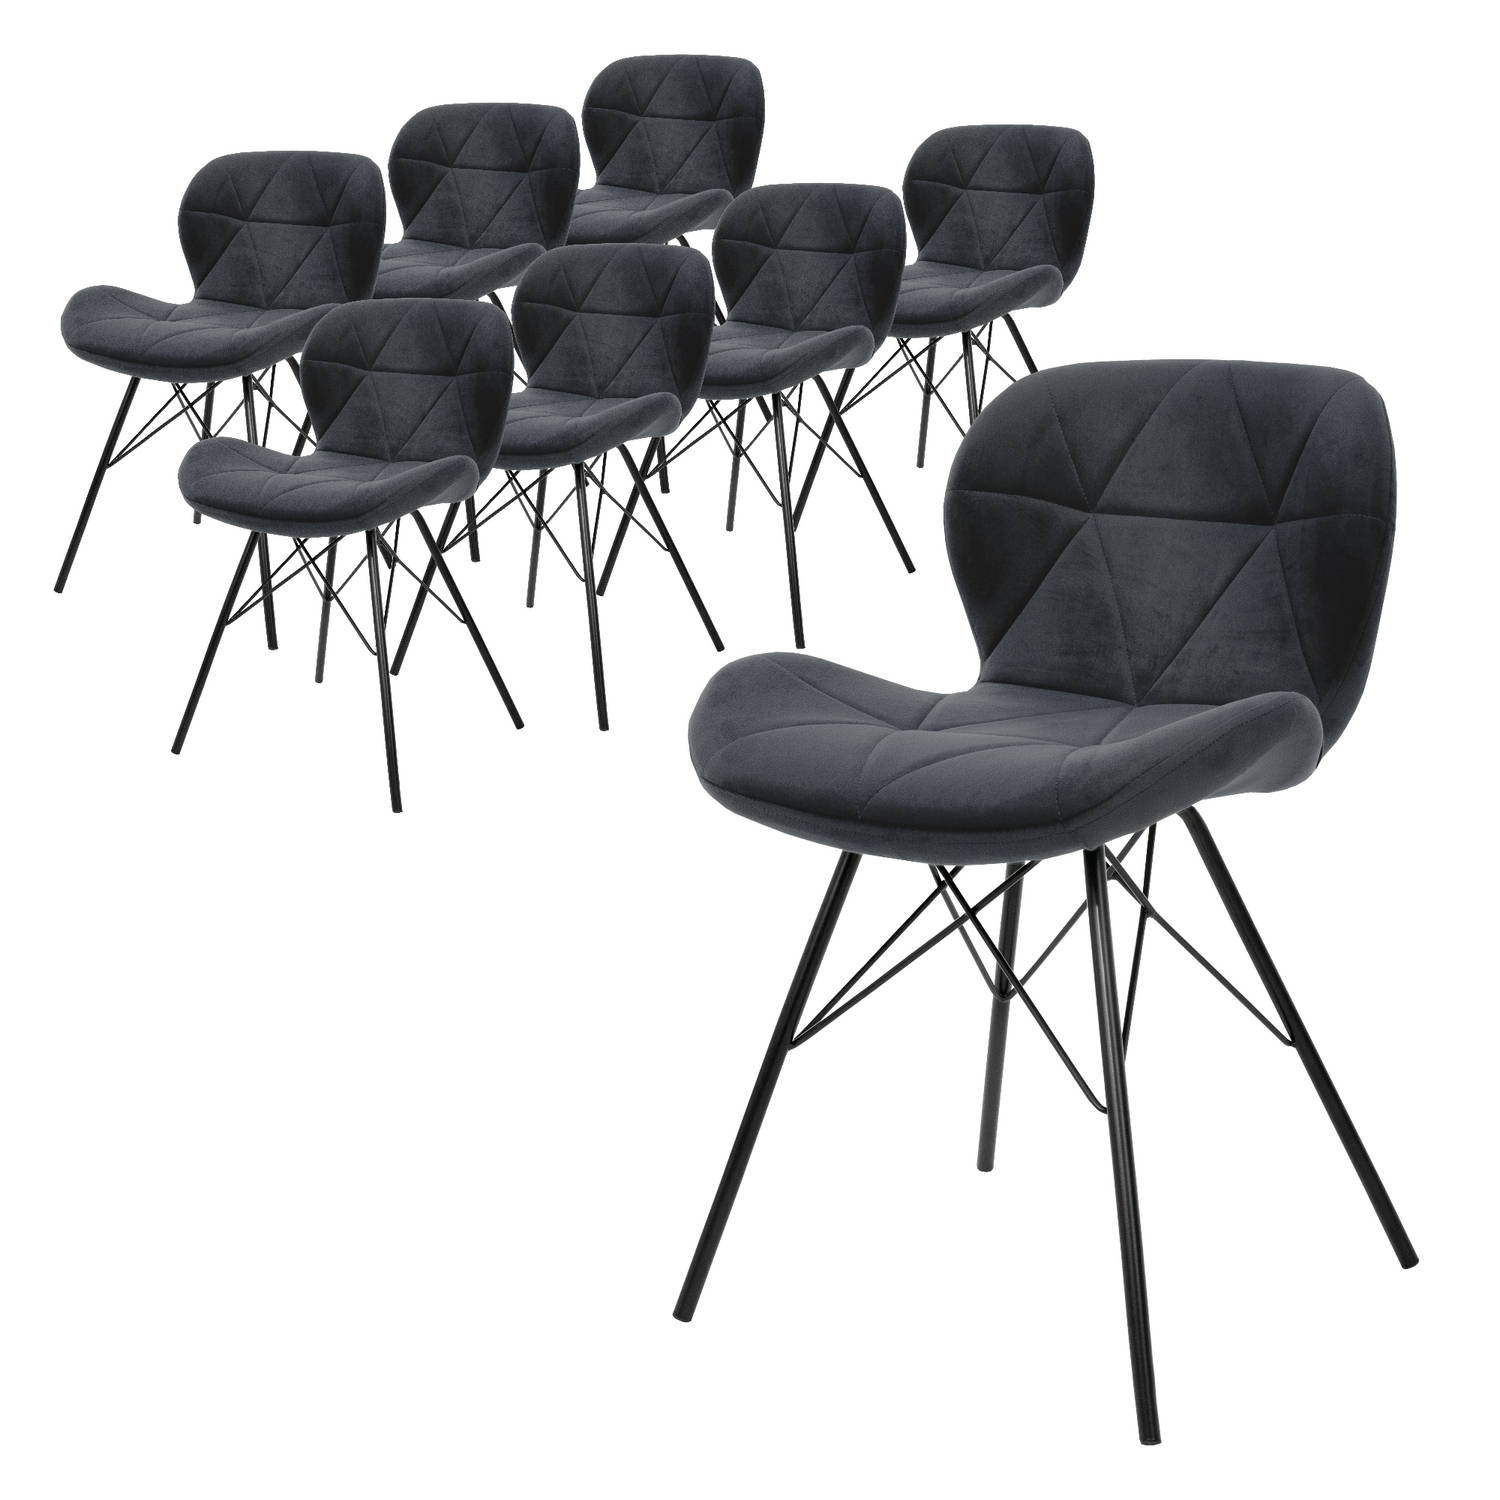 ML-Design Set van 8 eetkamerstoelen met rugleuning, antraciet, keukenstoel met fluwelen bekleding, gestoffeerde stoel met metalen poten, ergonomische stoel voor eettafel, woonkamer